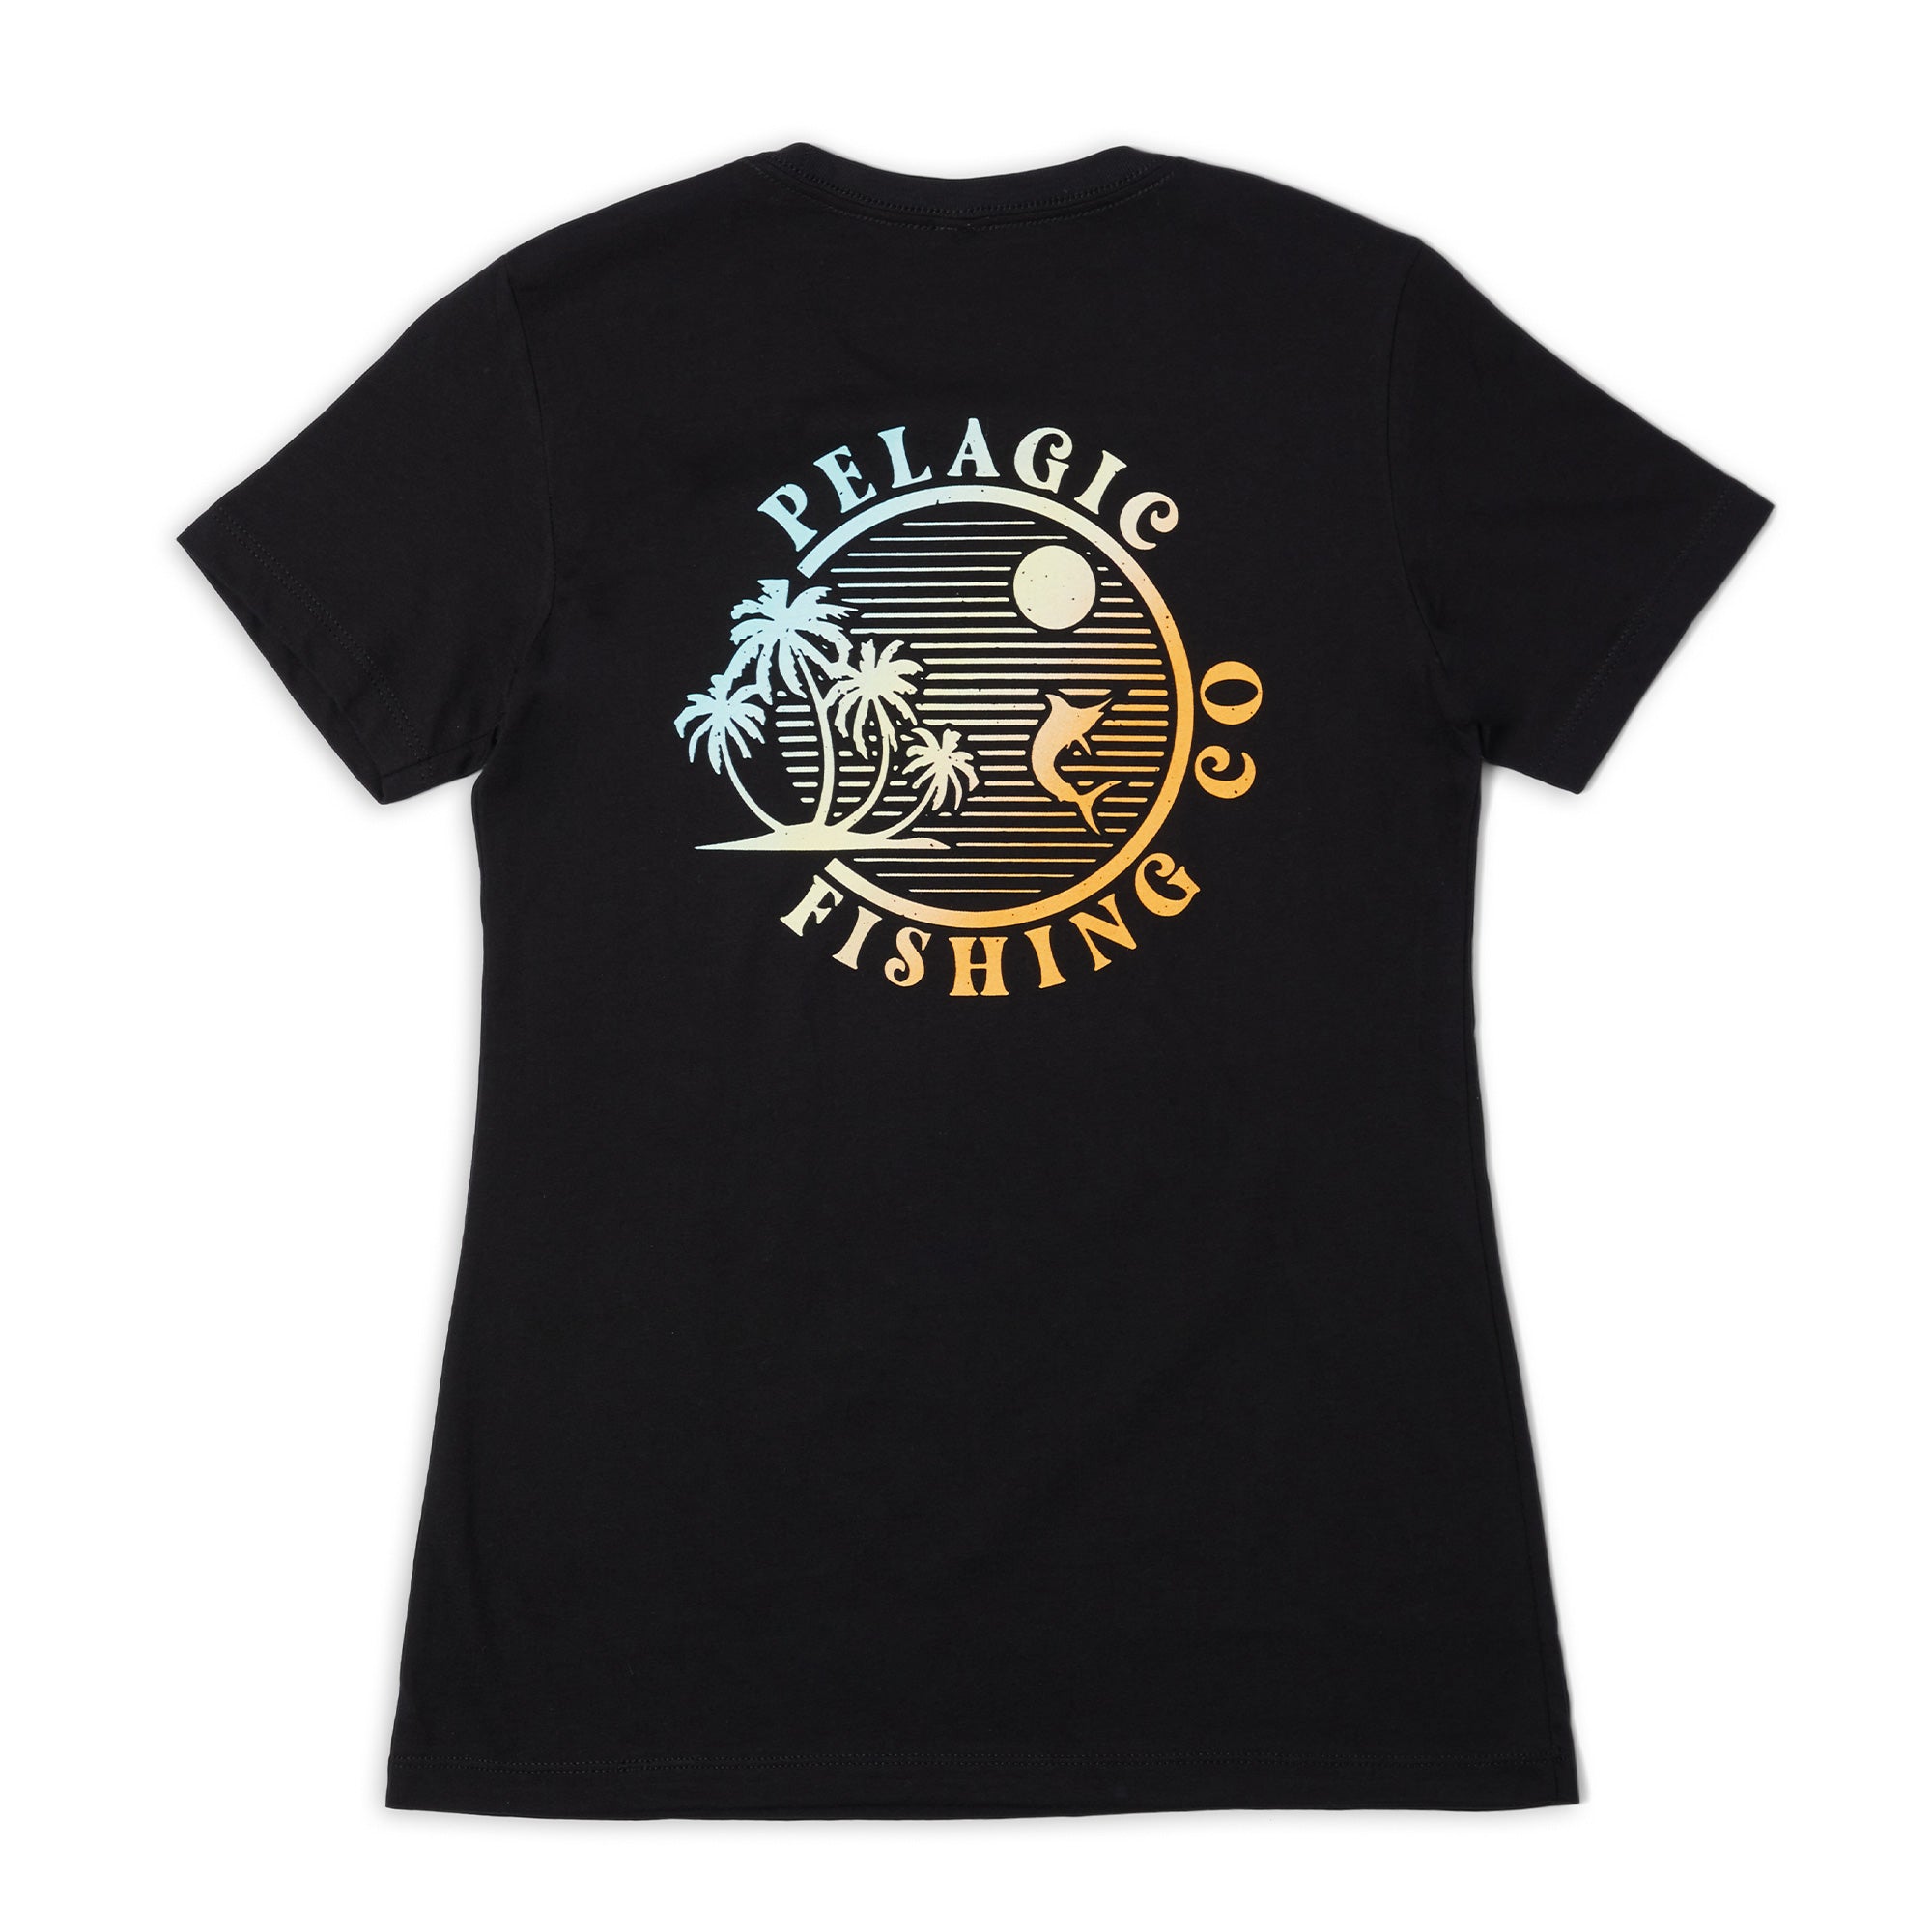 Ws Aquatek Twilight Ws Fishing Shirt